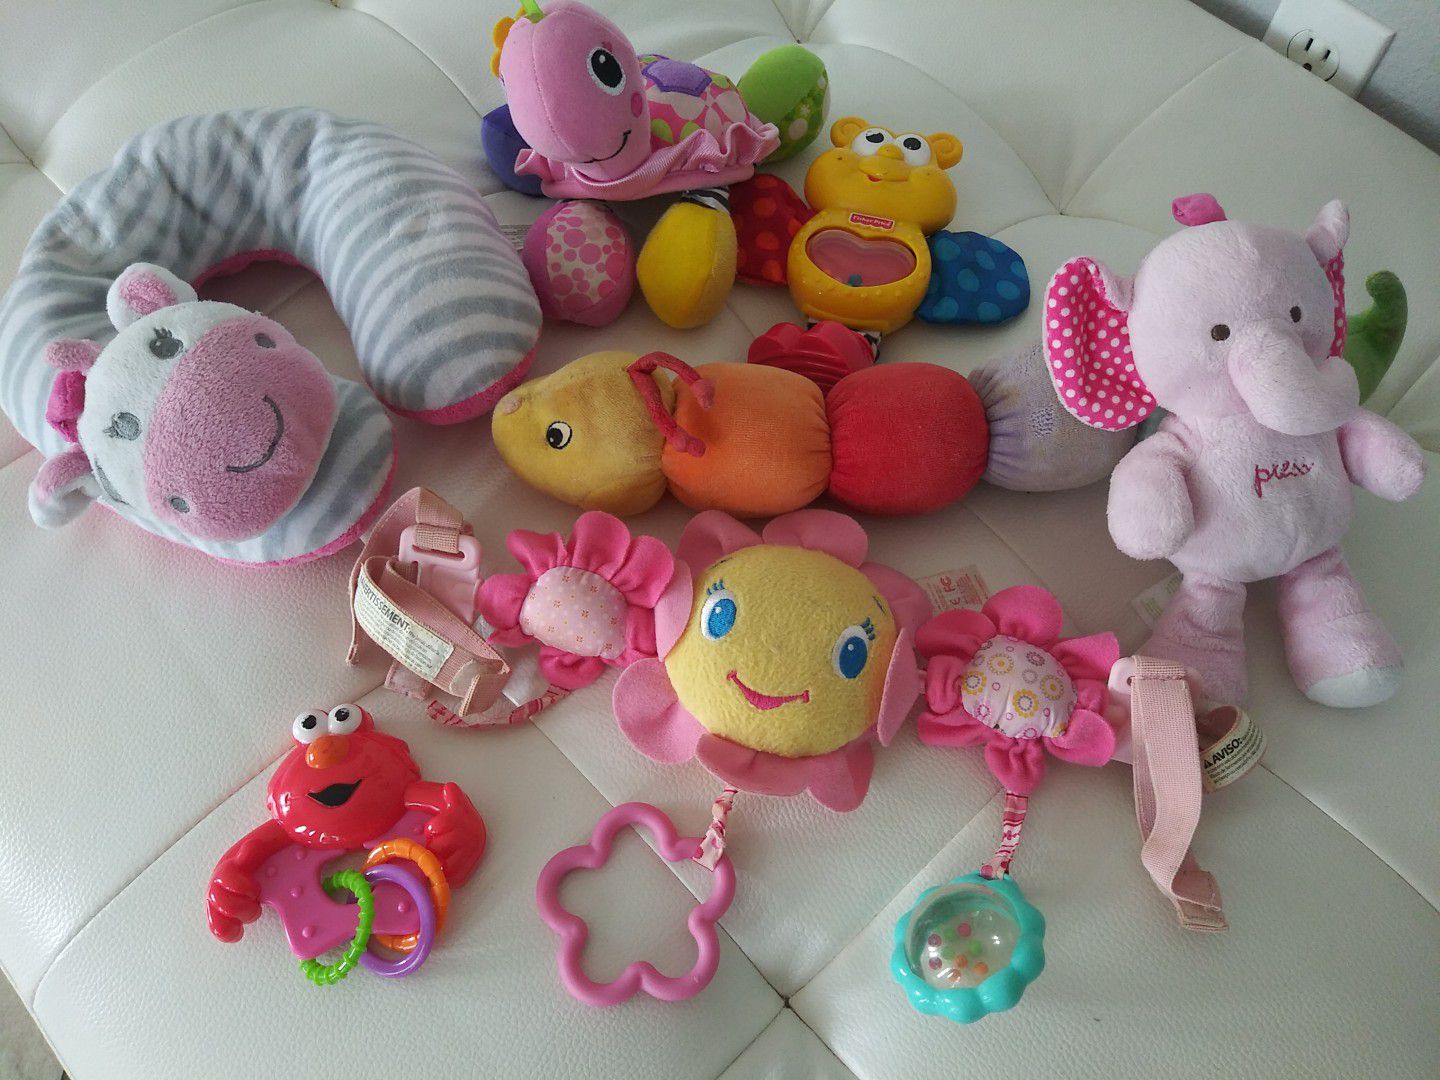 Infant's toys bundle